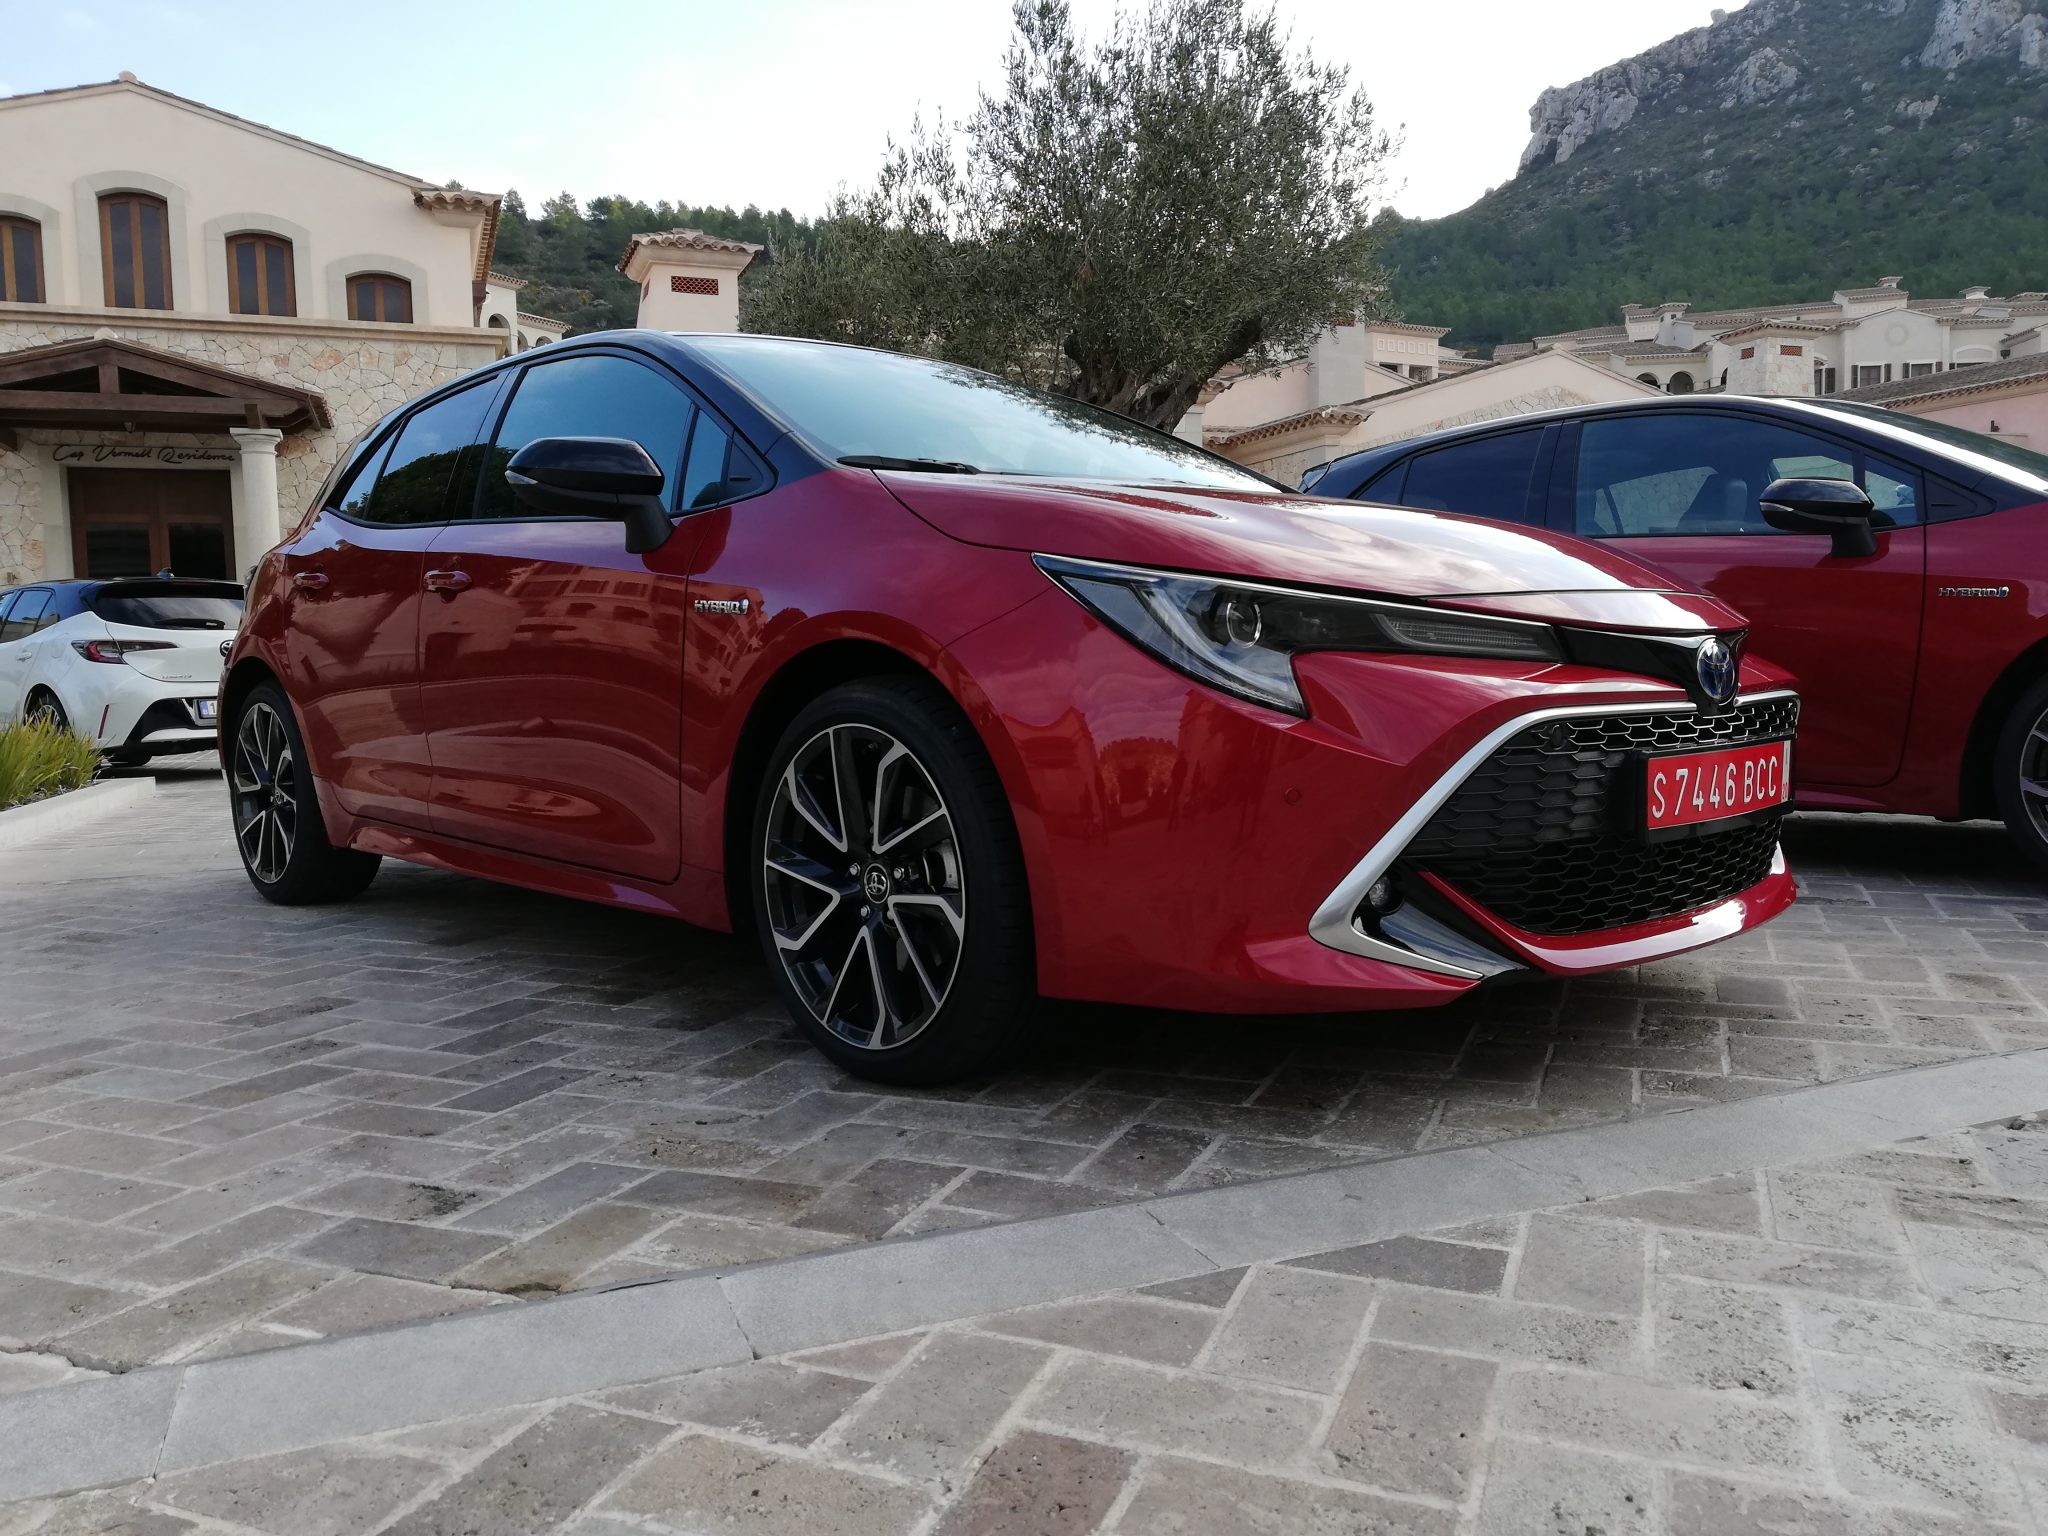 Toyota Auris Touring Sports, presentación y prueba en Mallorca